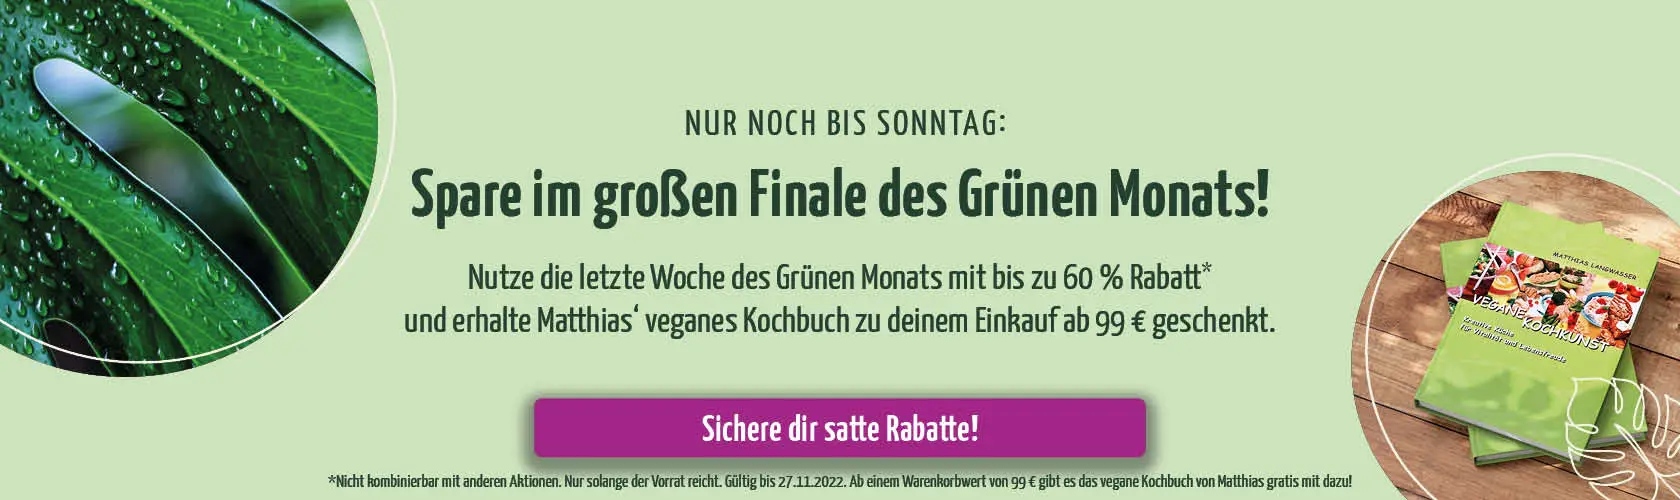 https://www.regenbogenkreis.de/regenwaldschutz/